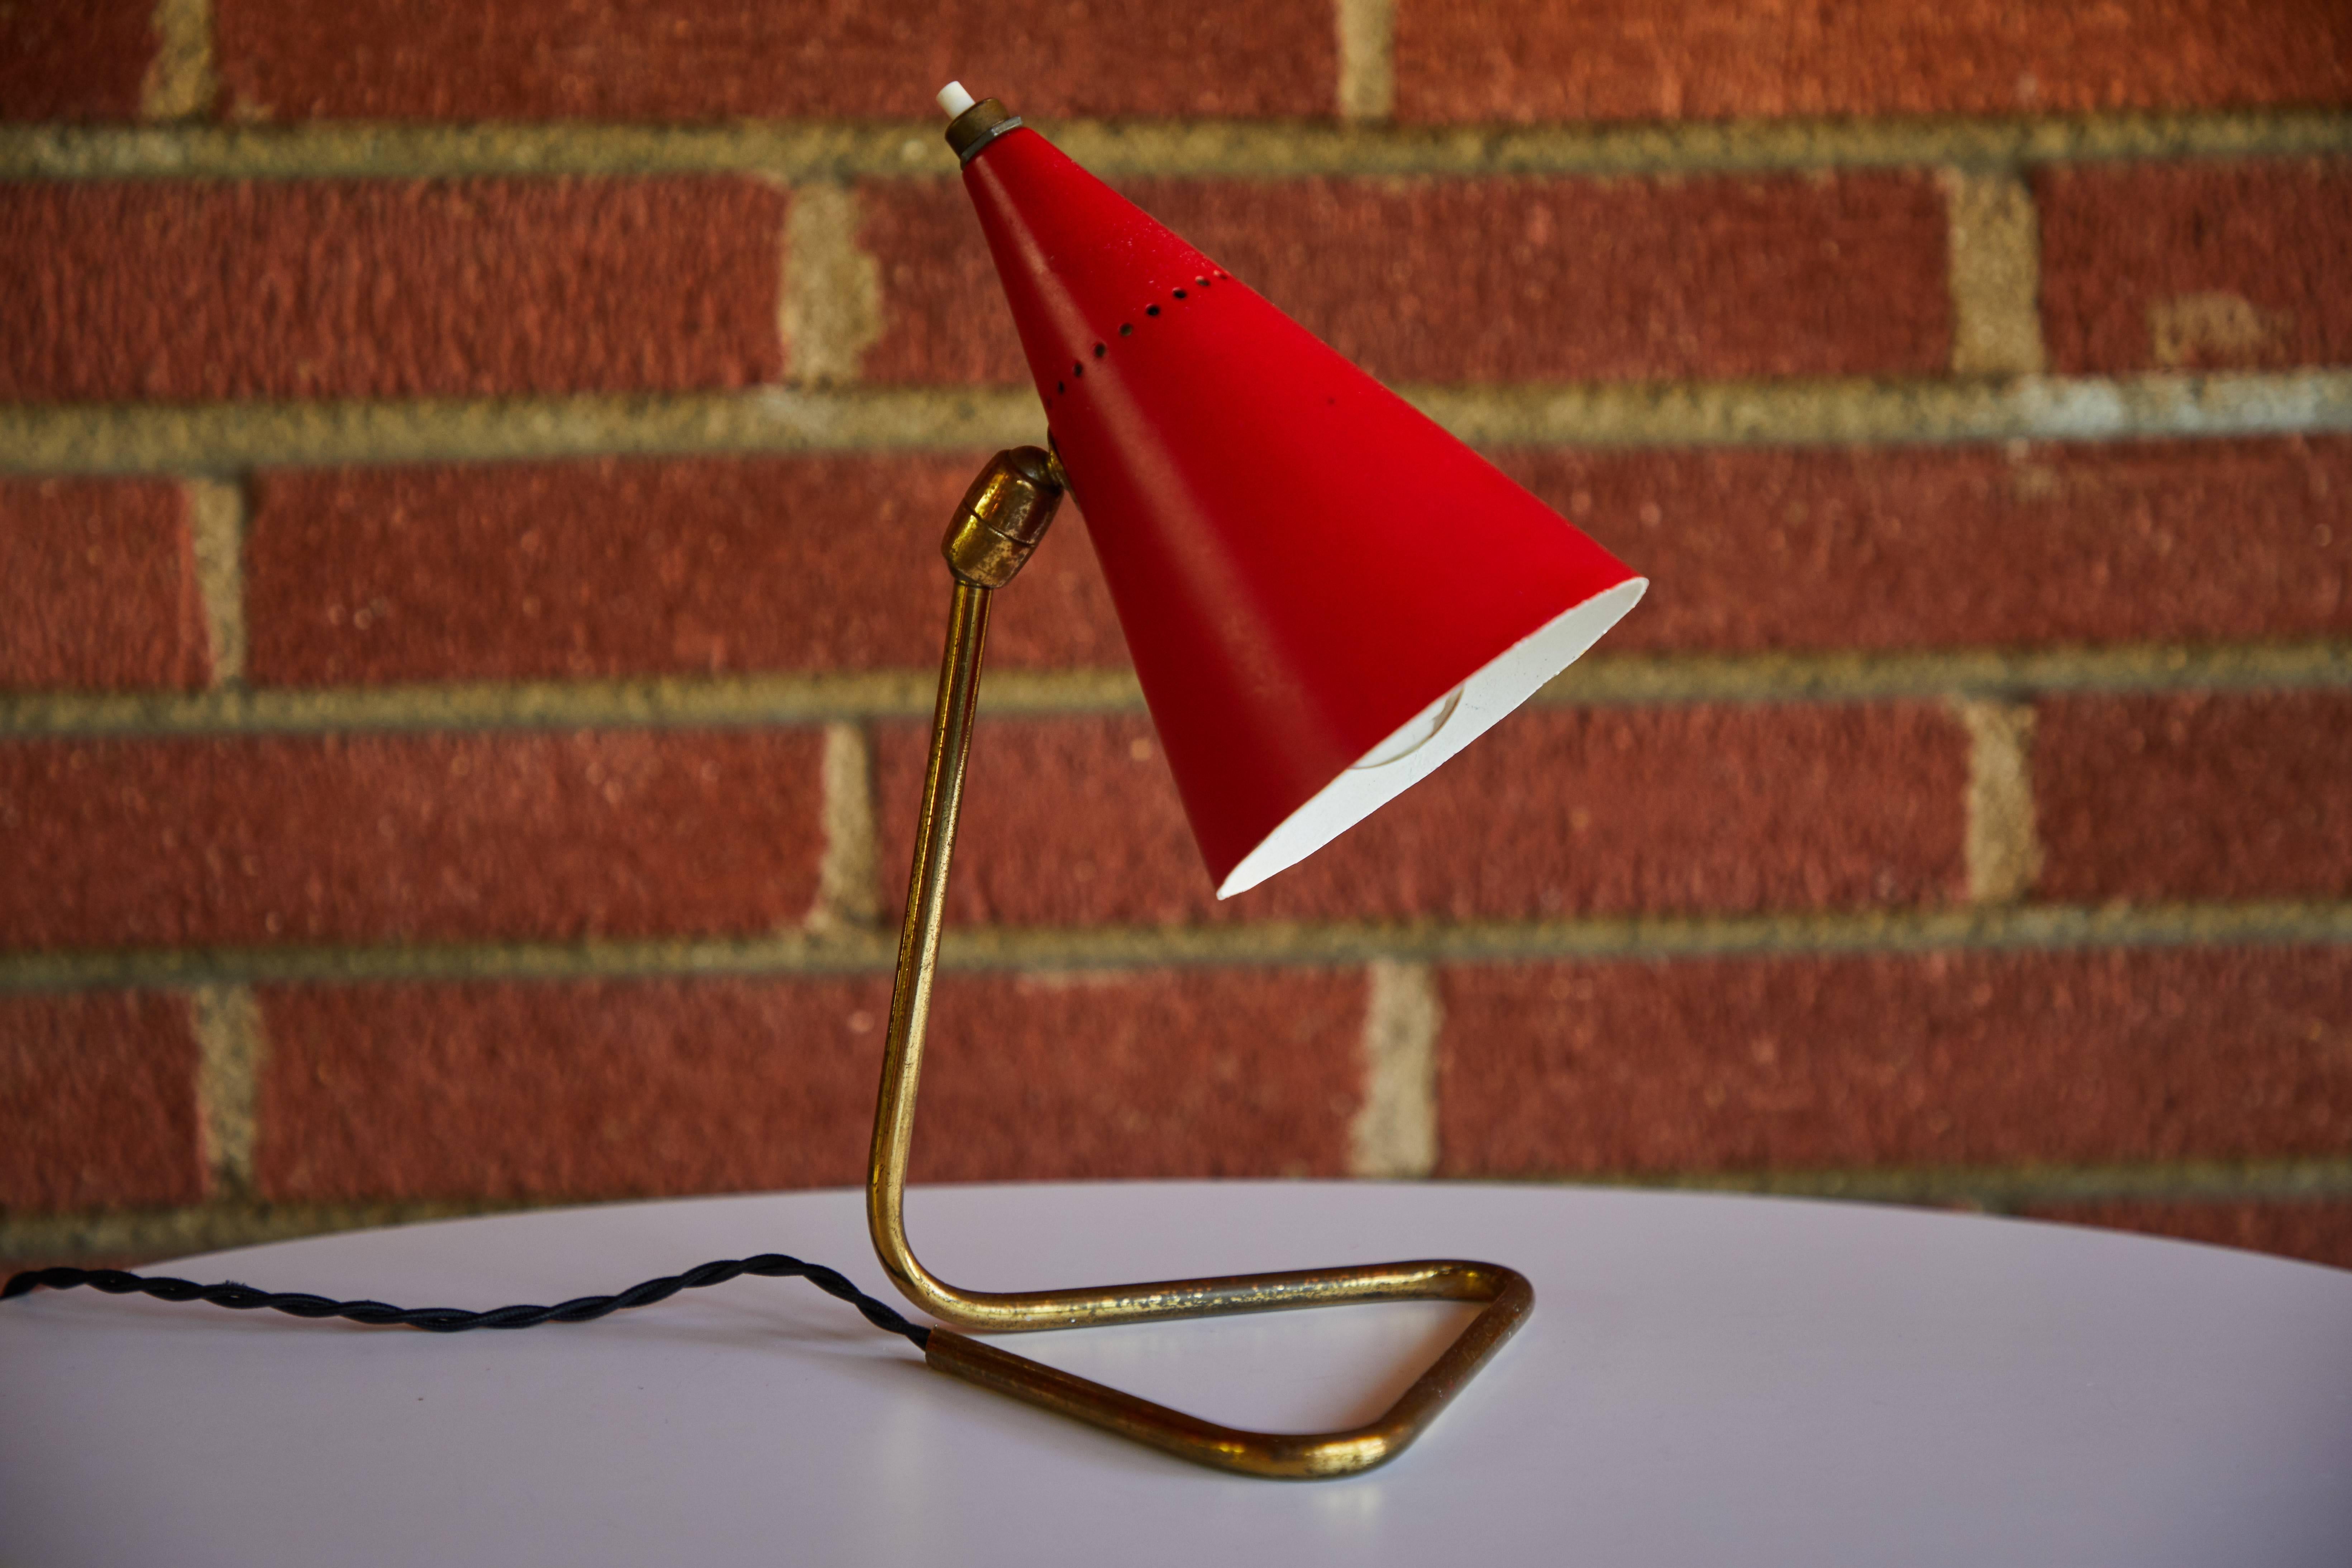 Rote Kegel-Tischlampe von Giuseppe Ostuni für Oluce, 1950er Jahre (Moderne der Mitte des Jahrhunderts)